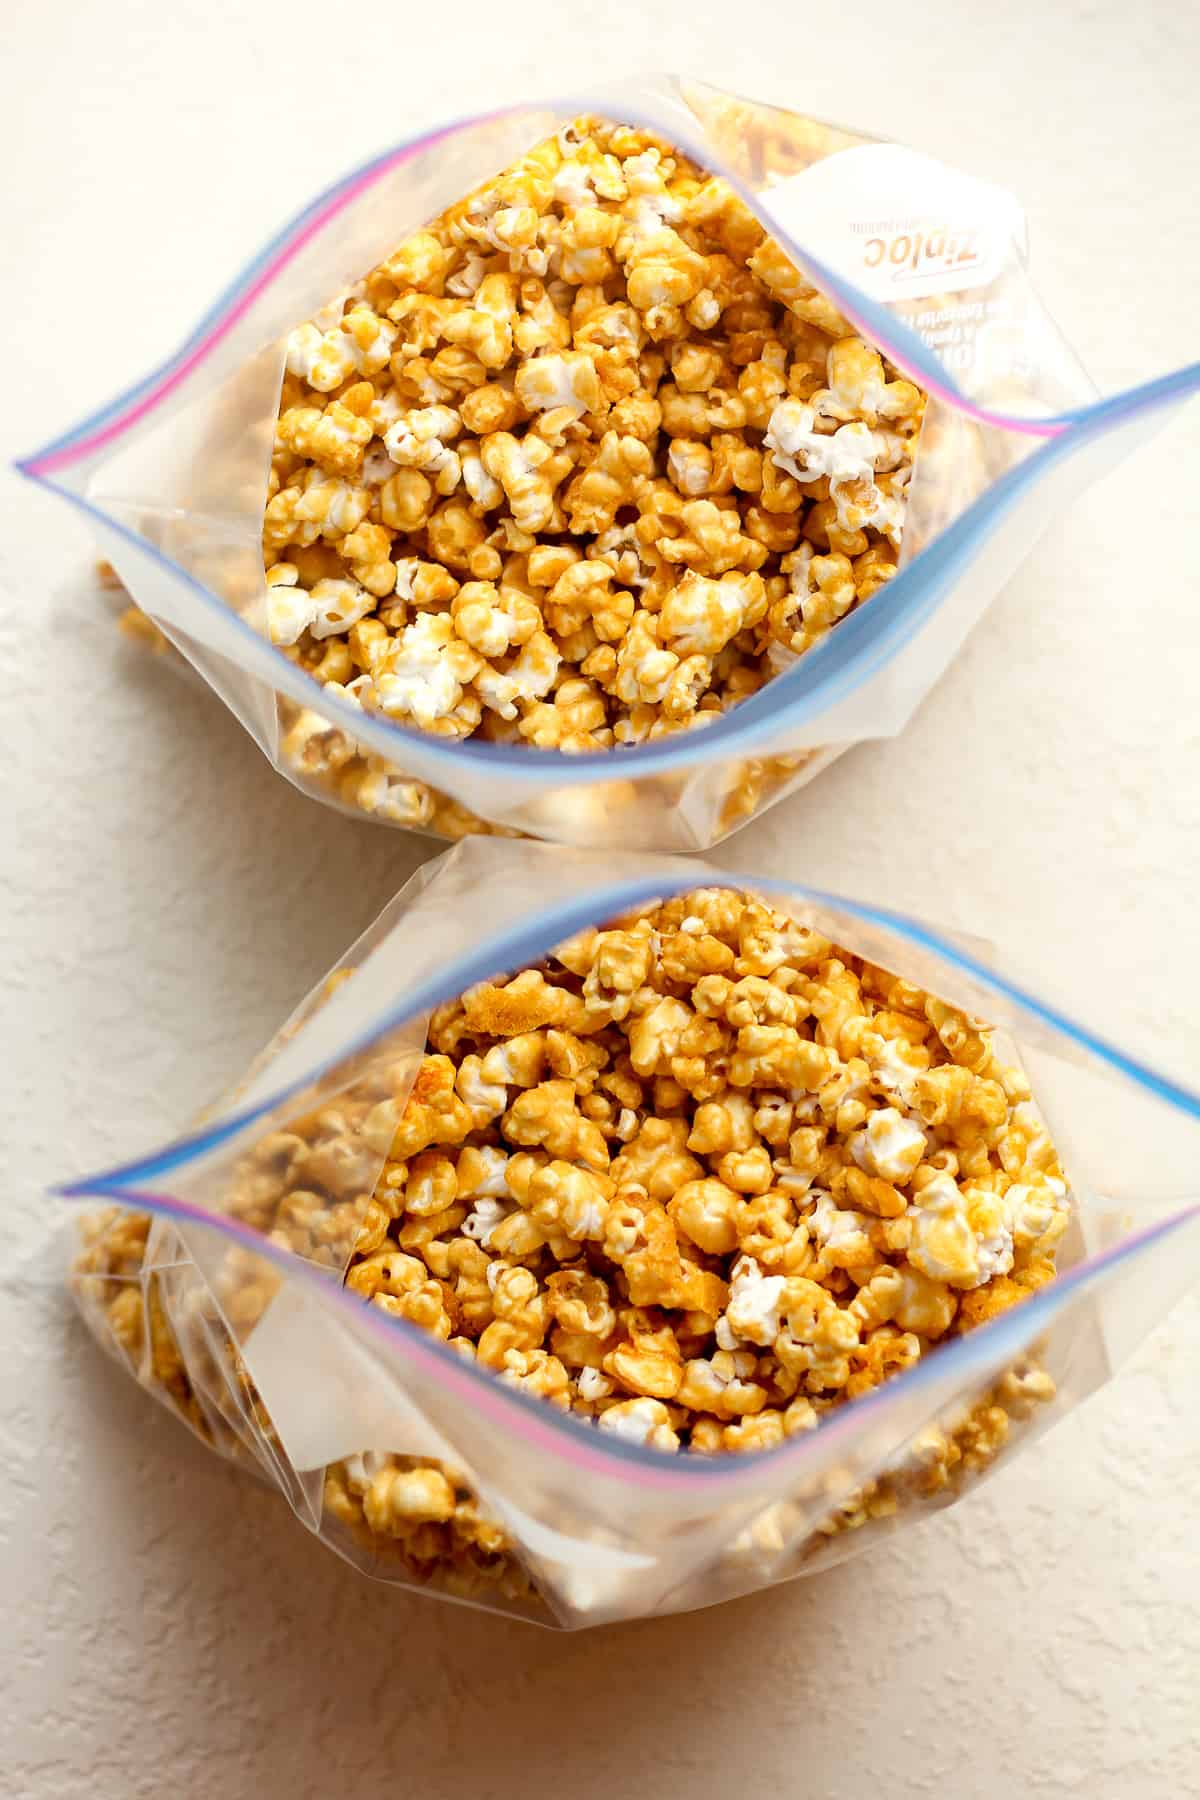 Two freezer bags of caramel popcorn.